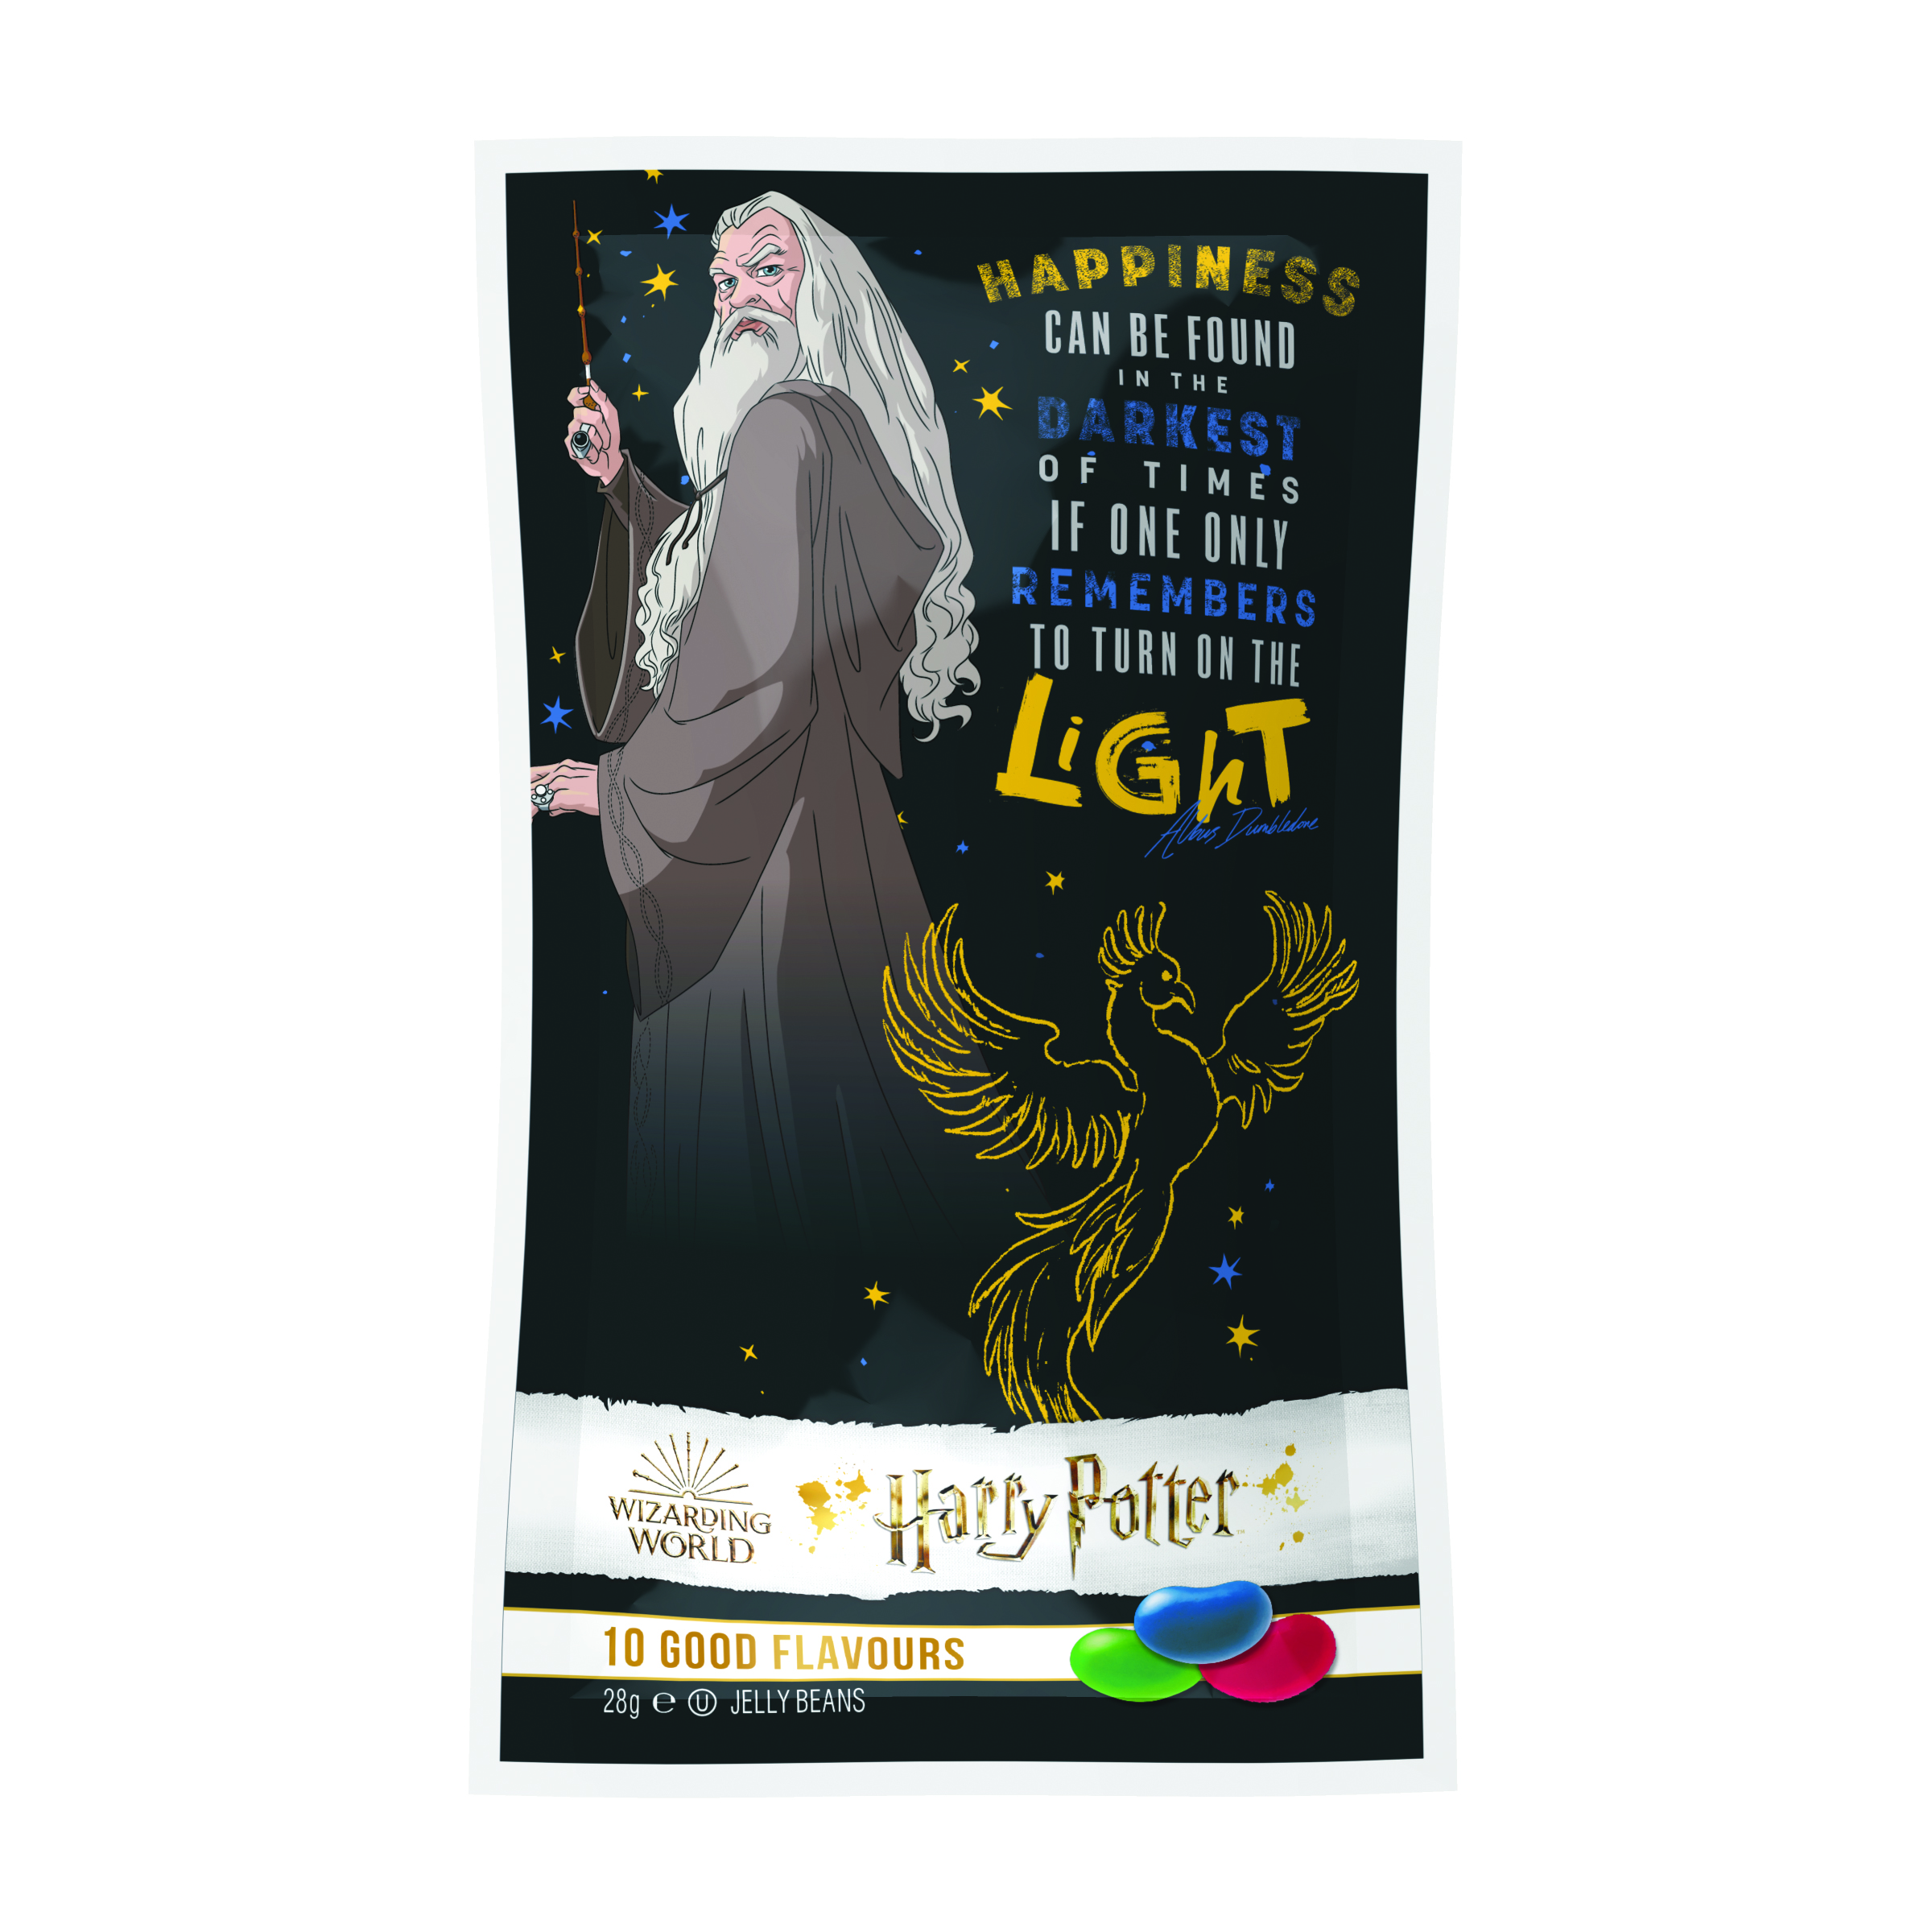  Драже жевательное "Jelly Belly" Harry Potter ассорти 10 вкусов 28 г